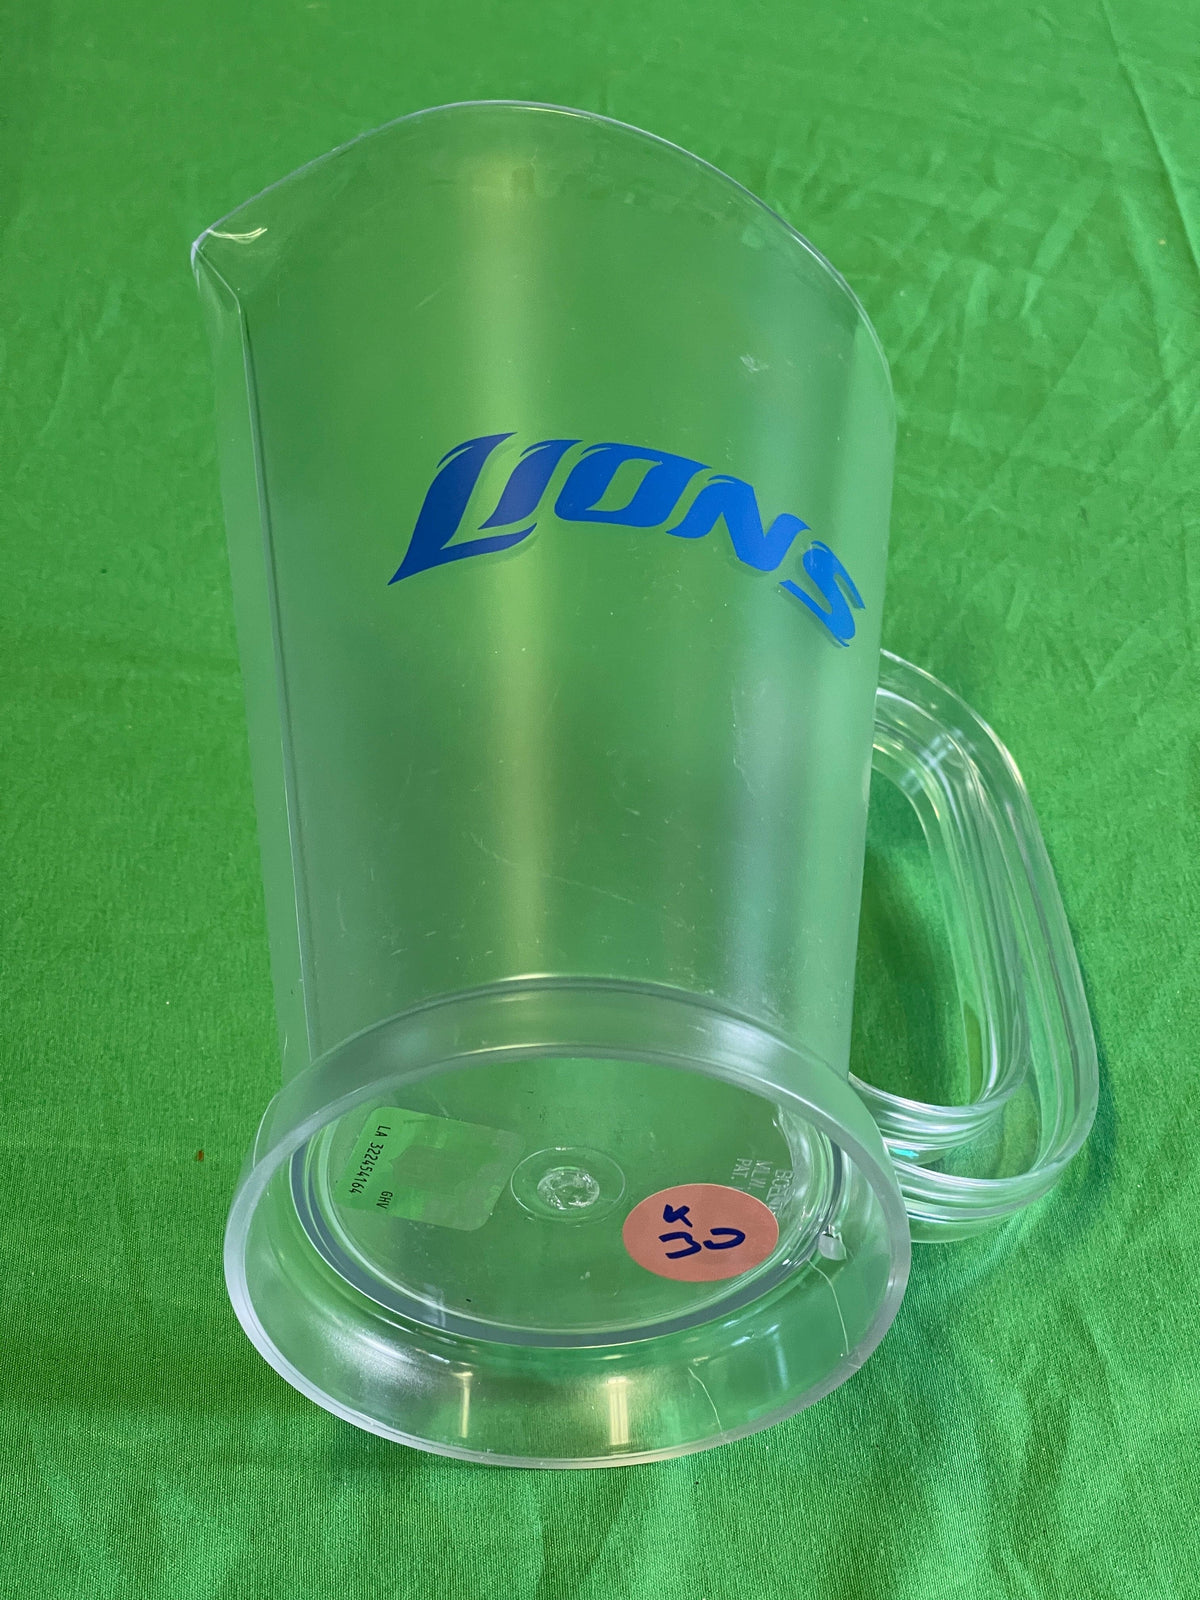 NFL Detroit Lions Plastic Beer Pitcher/Jug NWOT